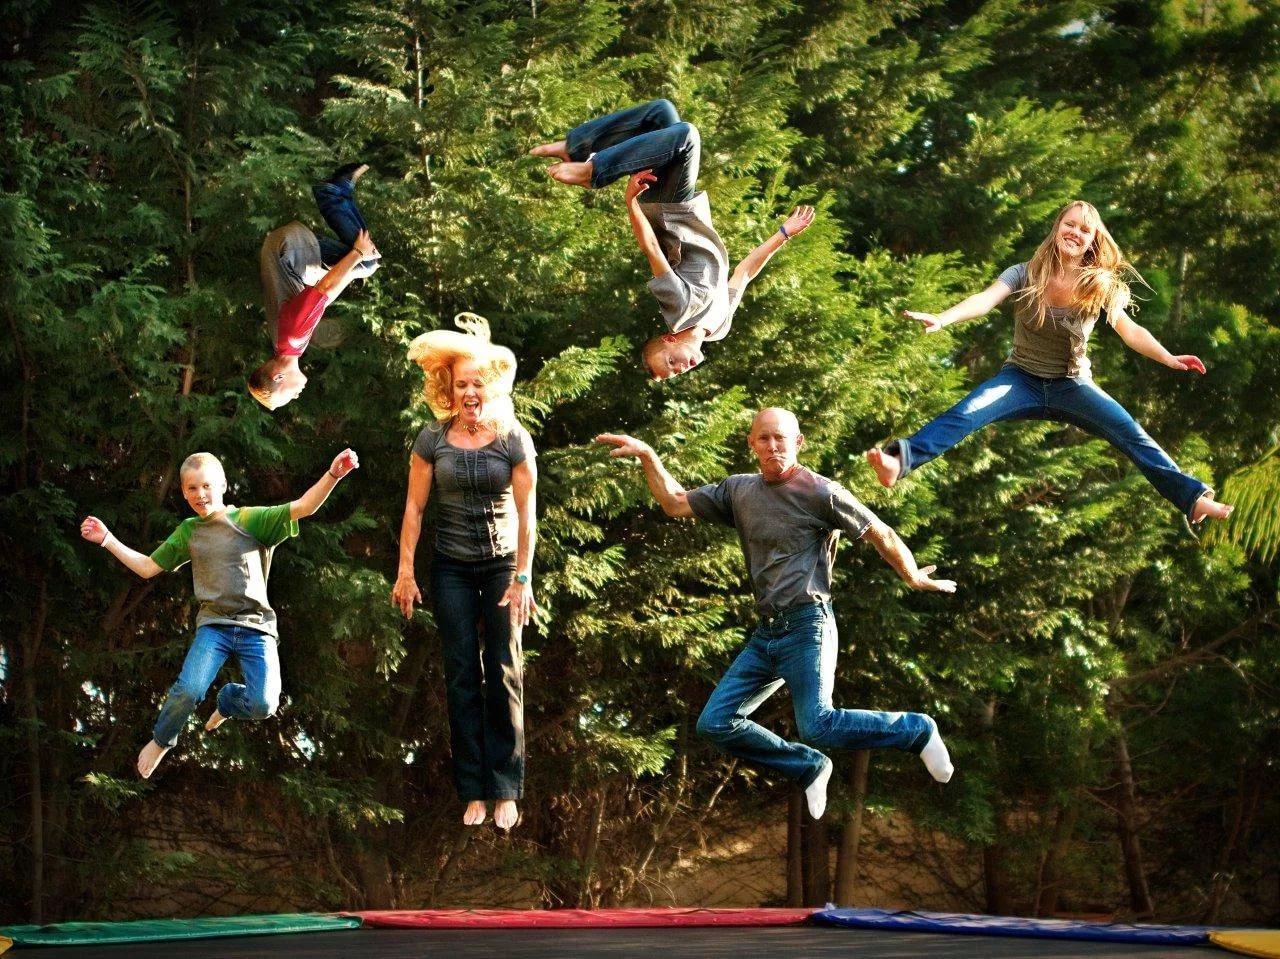 Групповые развлечения. Дети на батуте. Развлечения на природе. Человек прыгает на батуте. Дети в прыжке.